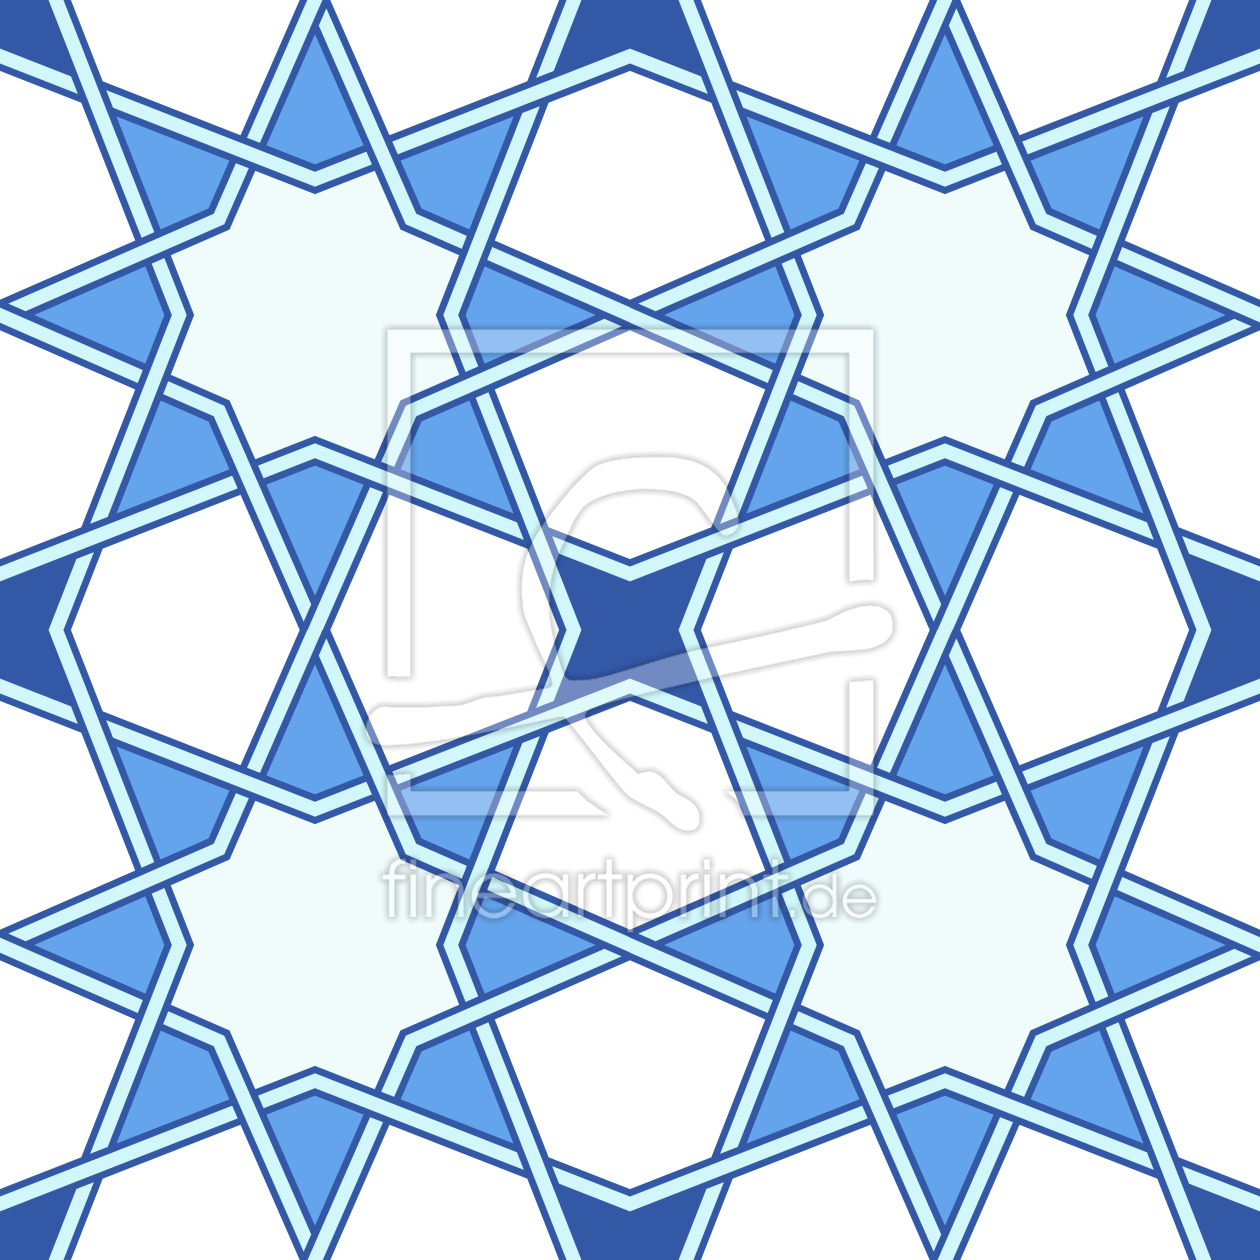 Bild-Nr.: 9007703 Stern Arabesk erstellt von patterndesigns-com